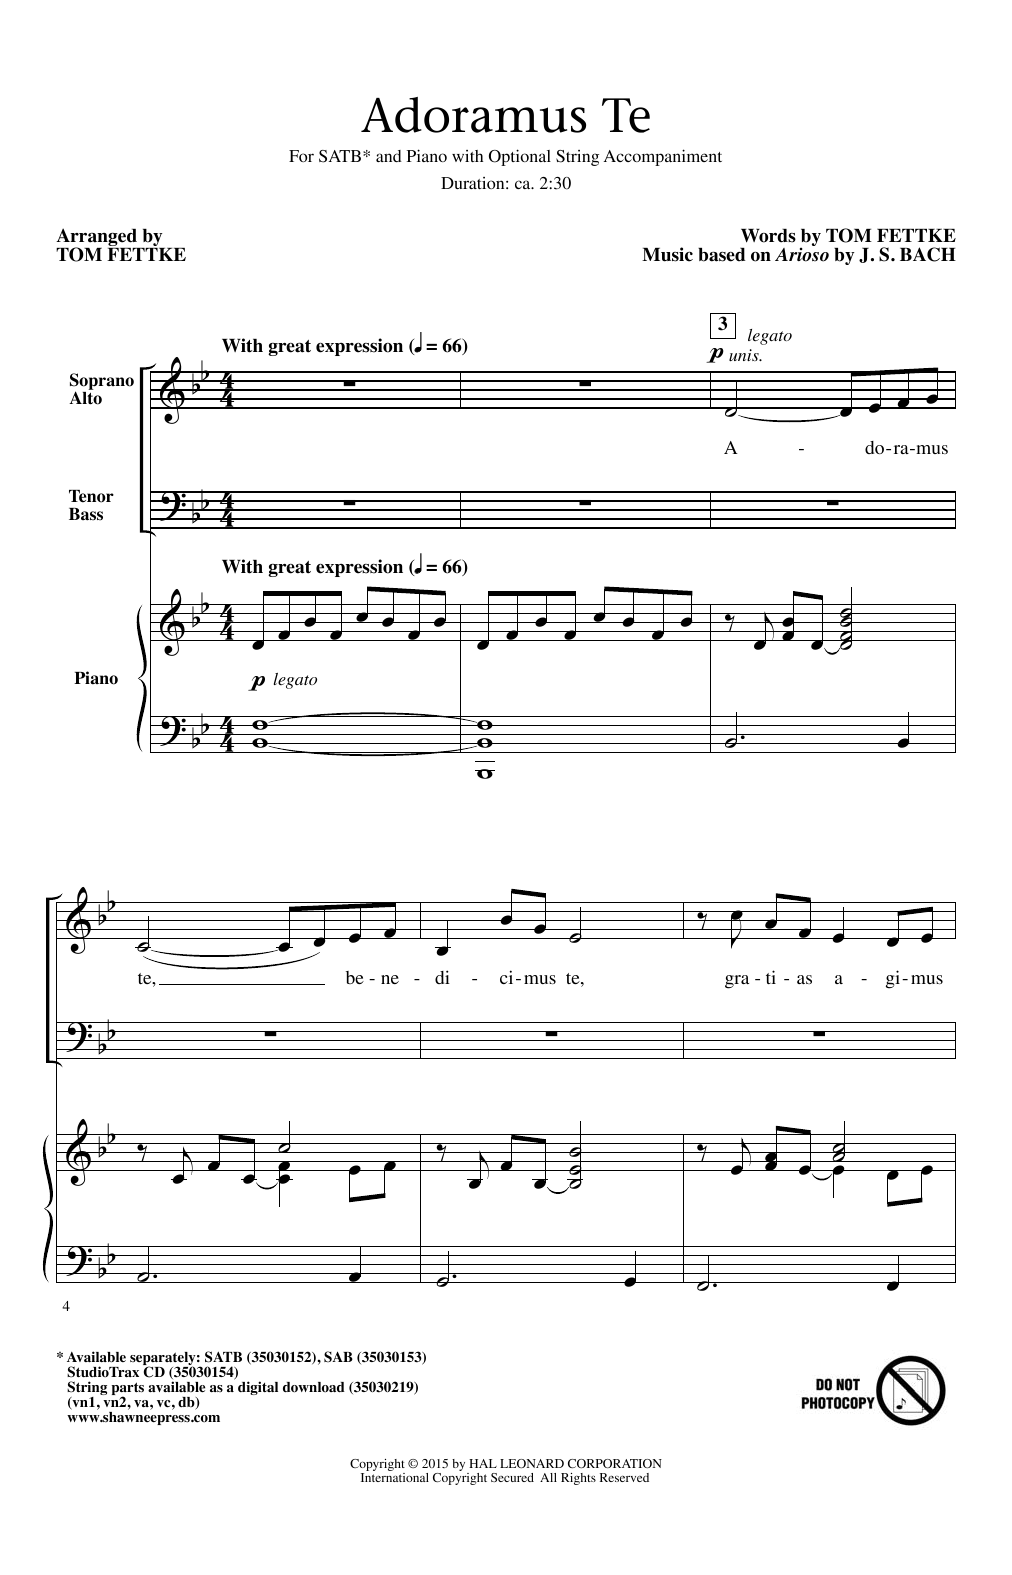 Tom Fettke Adoramus Te Sheet Music Notes & Chords for SAB - Download or Print PDF